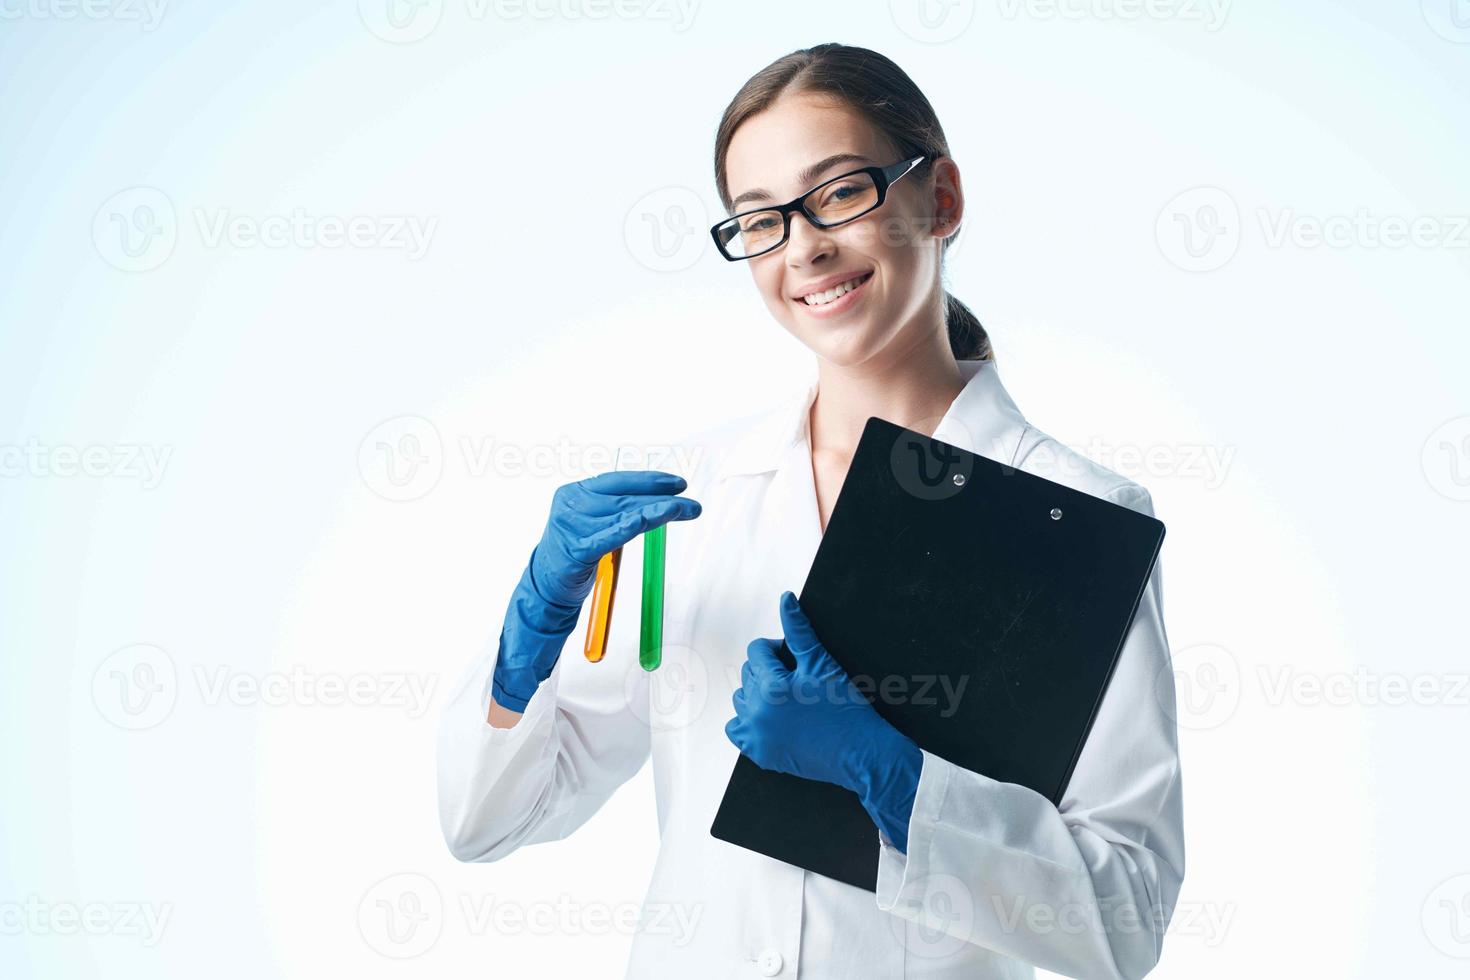 kvinna i vit täcka teknologi vetenskap kemisk lösning biologi foto